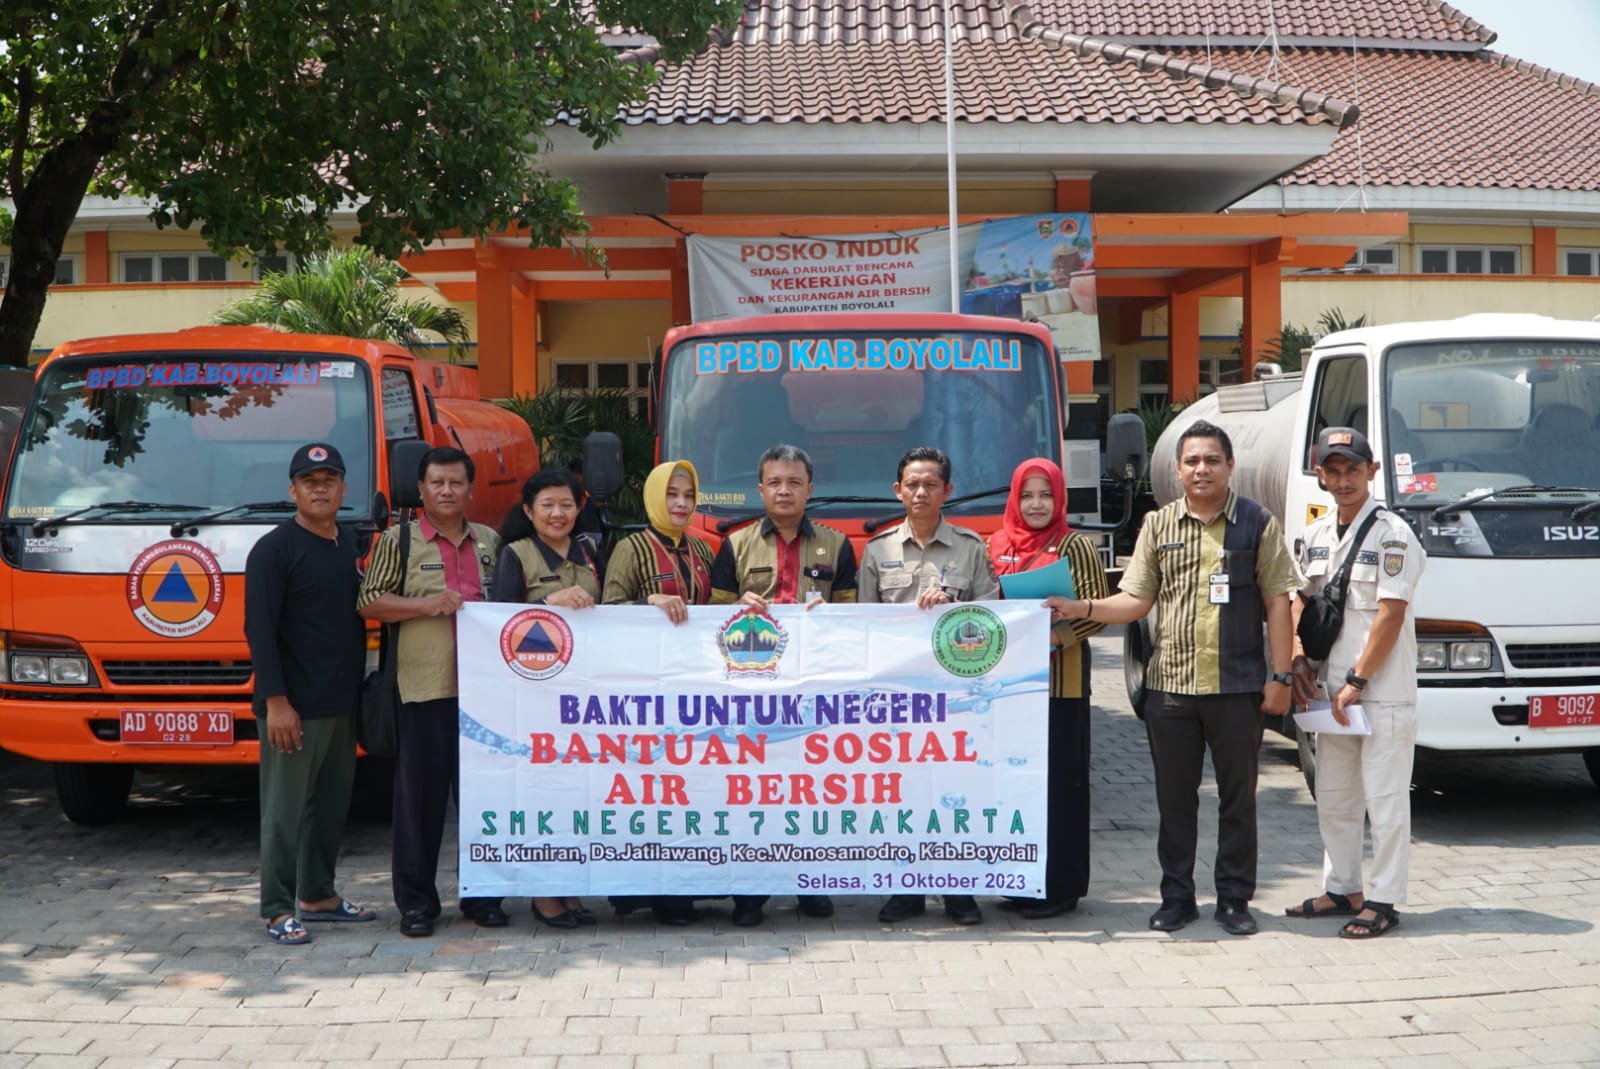 Donasi Air Bersih dari SMKN 7 Surakarta Untuk Warga Desa Jatilawang